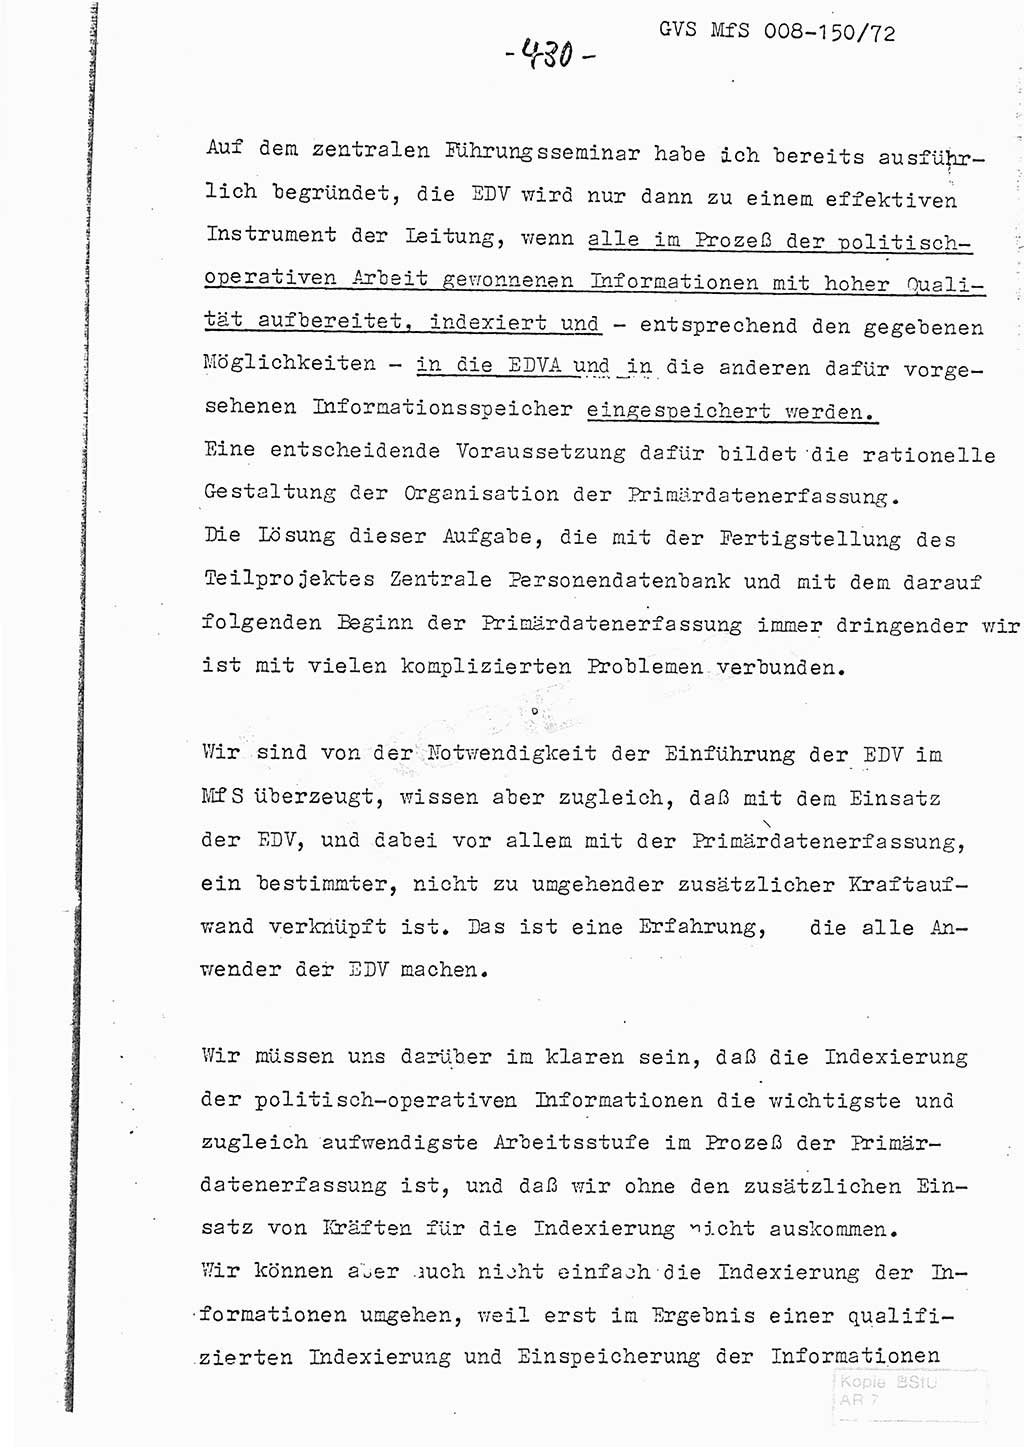 Referat (Entwurf) des Genossen Minister (Generaloberst Erich Mielke) auf der Dienstkonferenz 1972, Ministerium für Staatssicherheit (MfS) [Deutsche Demokratische Republik (DDR)], Der Minister, Geheime Verschlußsache (GVS) 008-150/72, Berlin 25.2.1972, Seite 430 (Ref. Entw. DK MfS DDR Min. GVS 008-150/72 1972, S. 430)